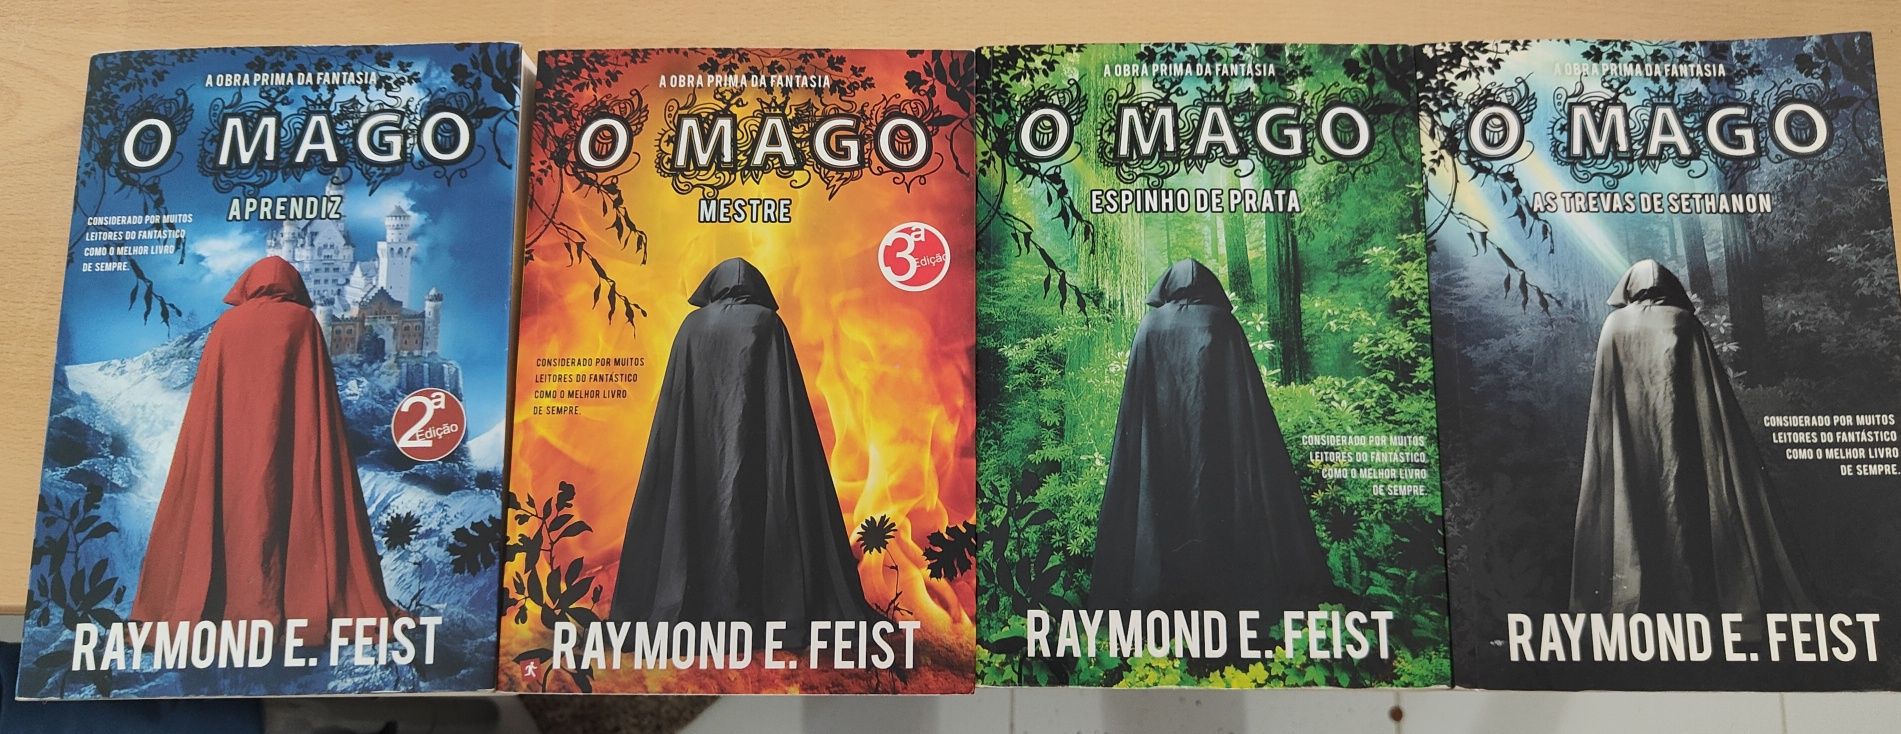 4 Livros da coleção O MAGO